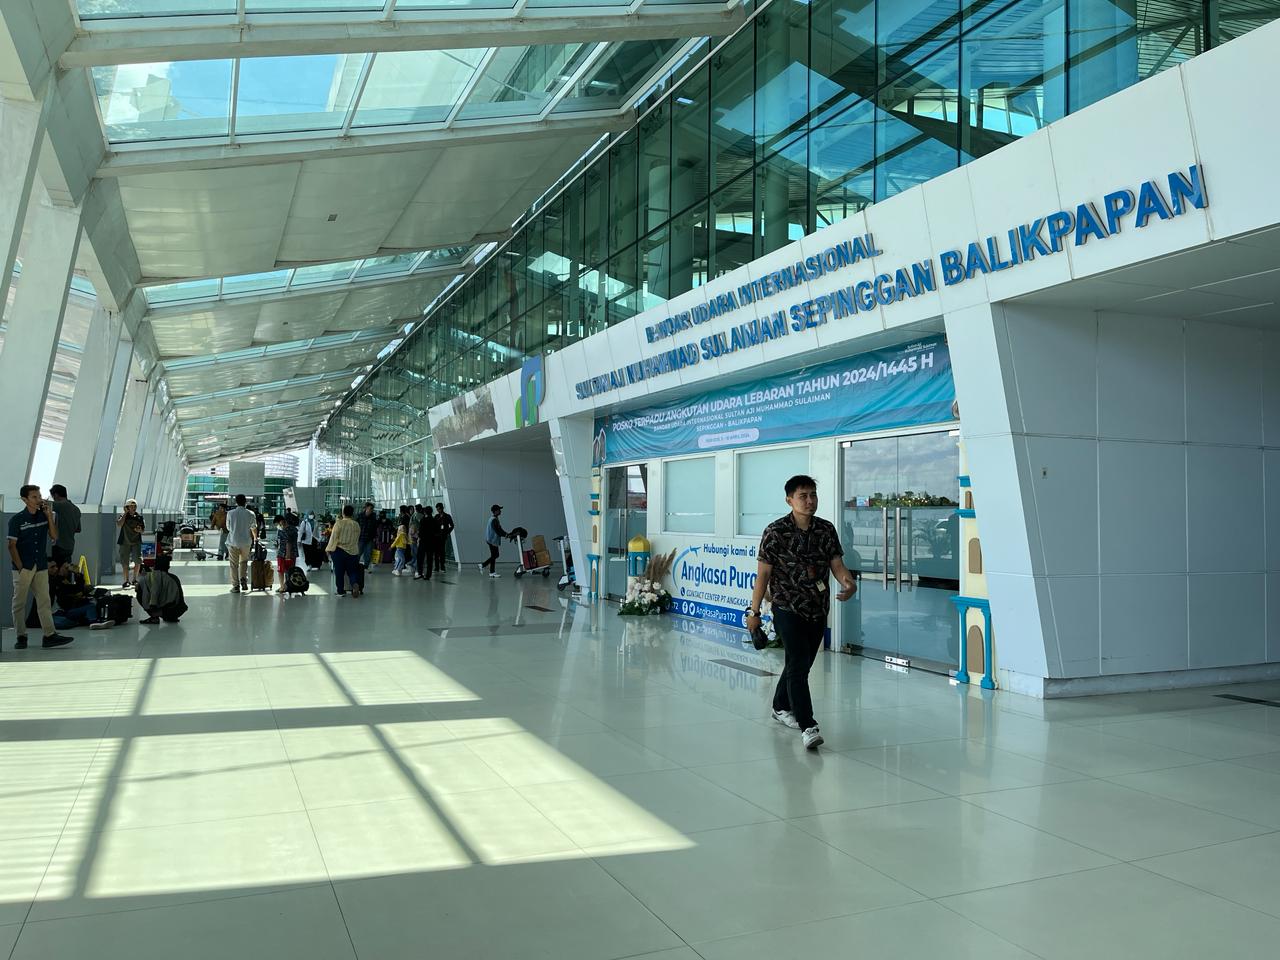  lonjakan penumpang, pihak Bandara SAMS Sepinggan telah membuka extra flight